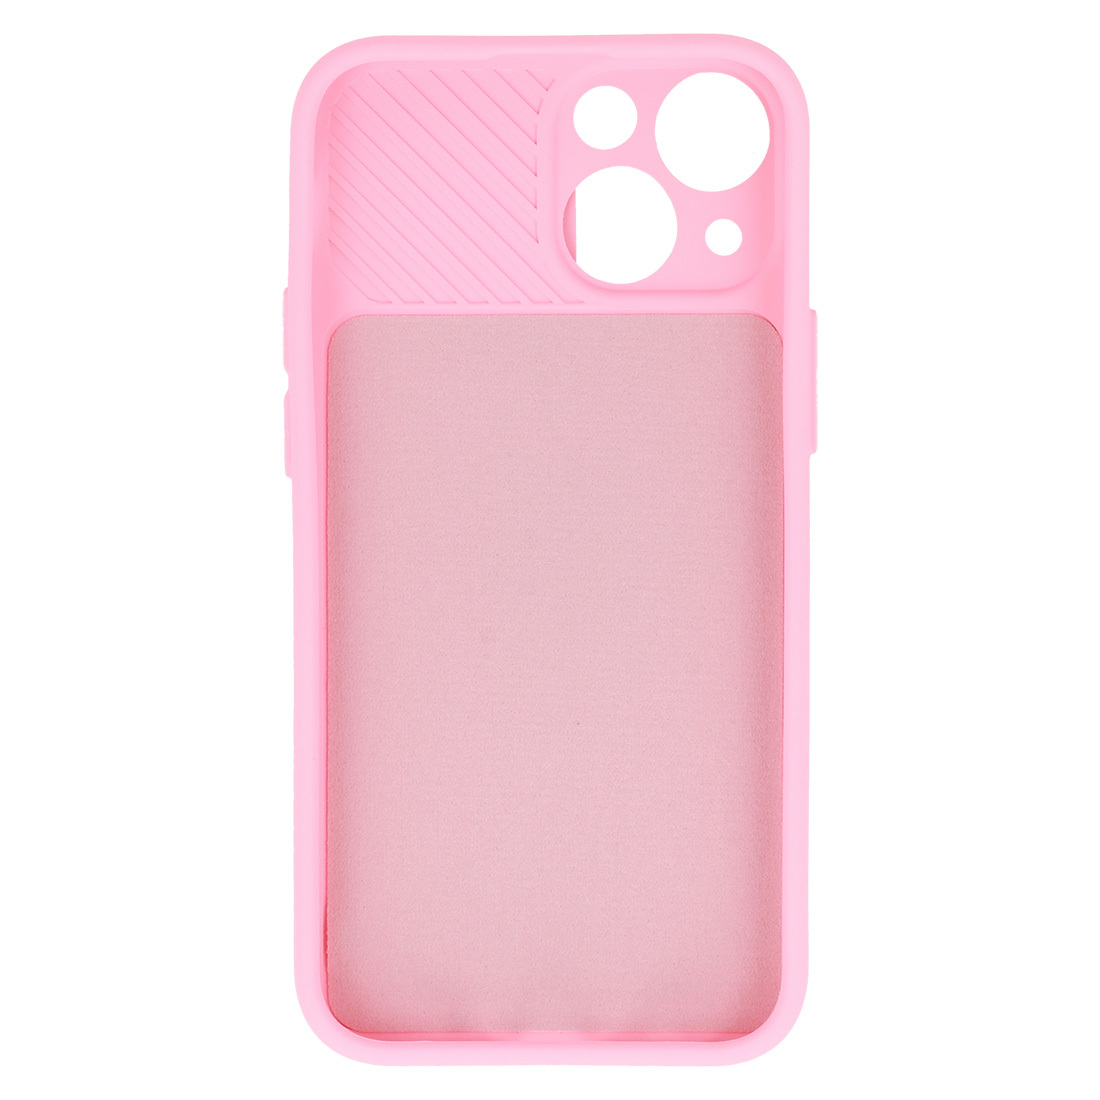 Pokrowiec etui z elastycznego TPU Camshield Soft Case jasnorowe APPLE iPhone 11 Pro Max / 5